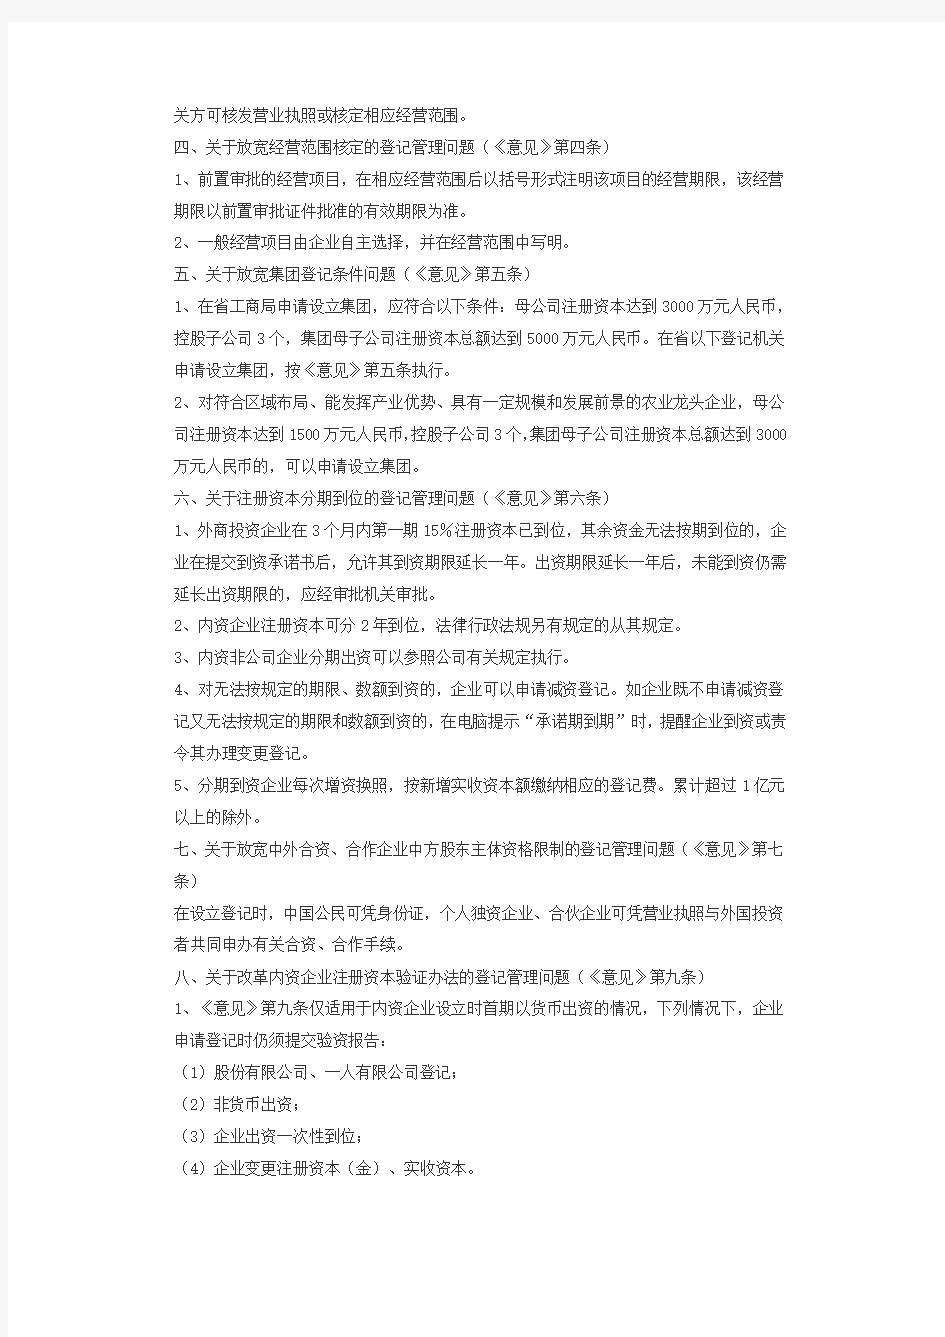 福建省工商局关于企业注册的35条新规定